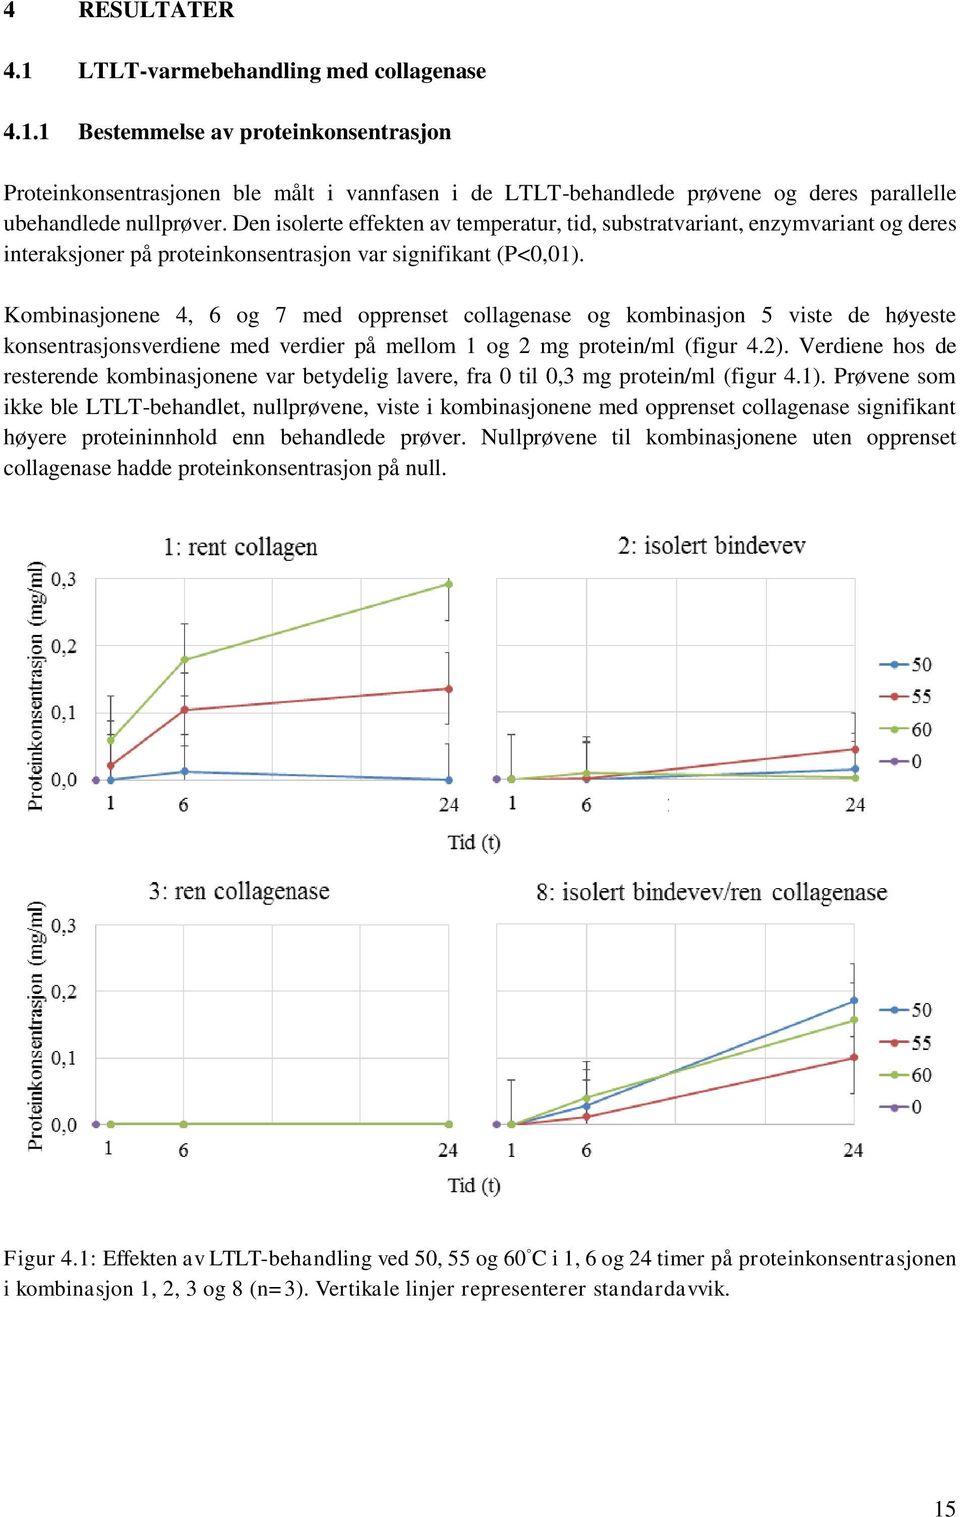 Kombinasjonene 4, 6 og 7 med opprenset collagenase og kombinasjon 5 viste de høyeste konsentrasjonsverdiene med verdier på mellom 1 og 2 mg protein/ml (figur 4.2).